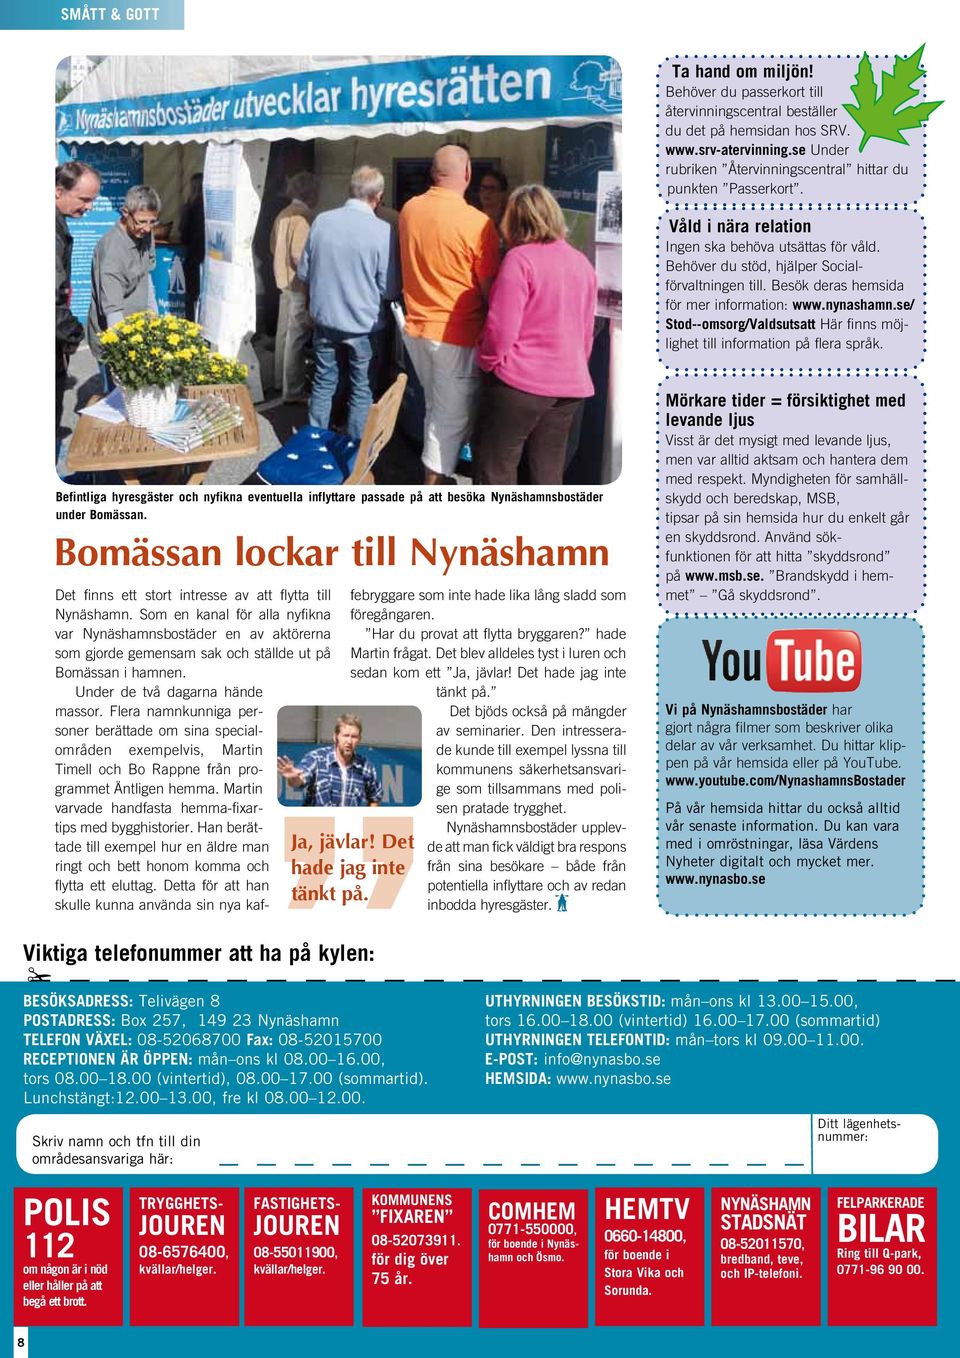 Besök deras hemsida för mer information: www.nynashamn.se/ Stod--omsorg/Valdsutsatt Här finns möjlighet till information på flera språk.